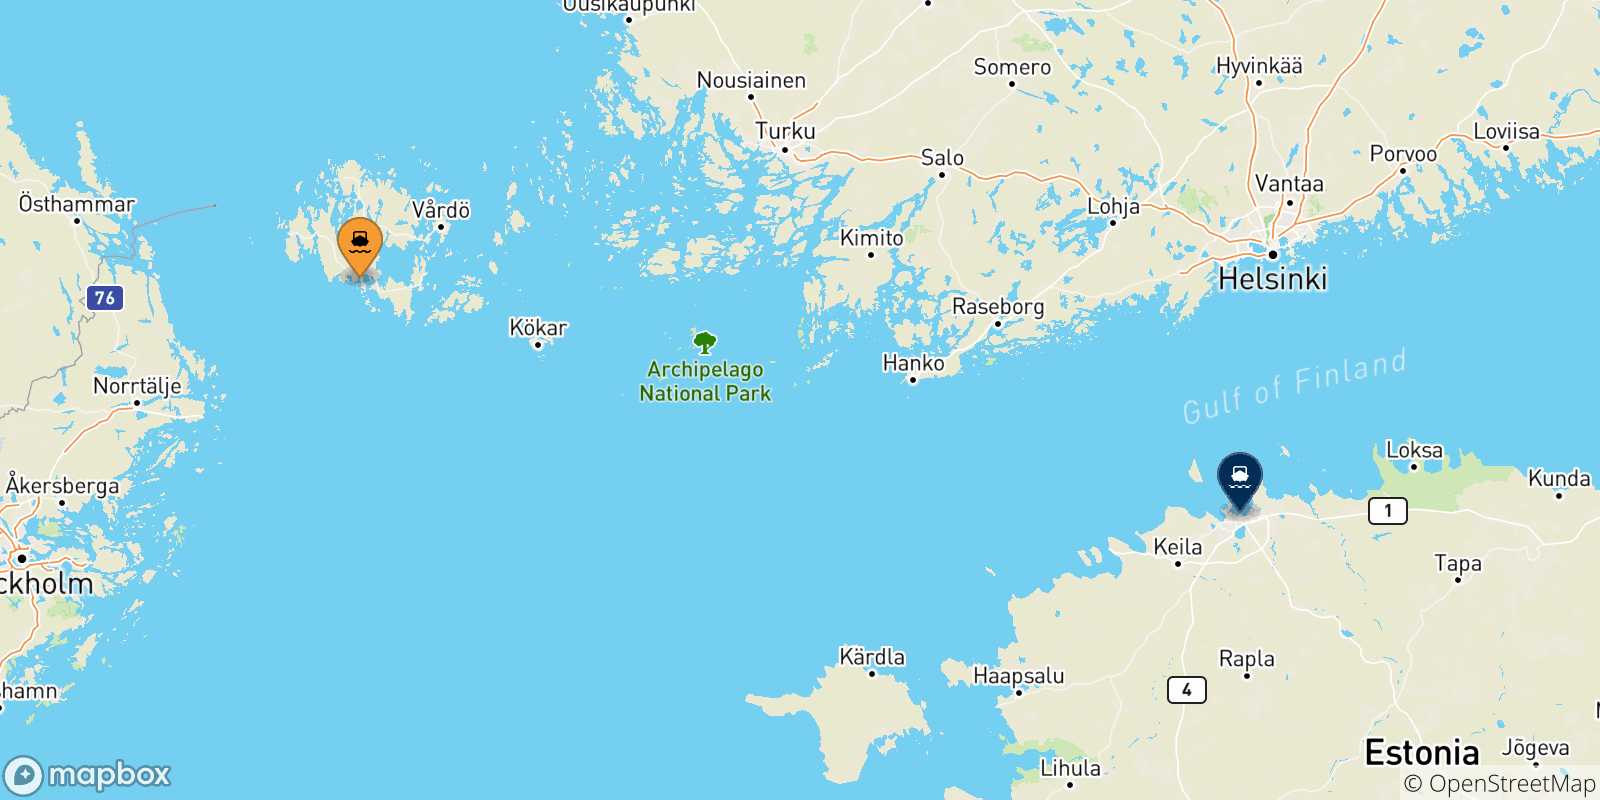 Mappa delle possibili rotte tra Mariehamn e l'Estonia